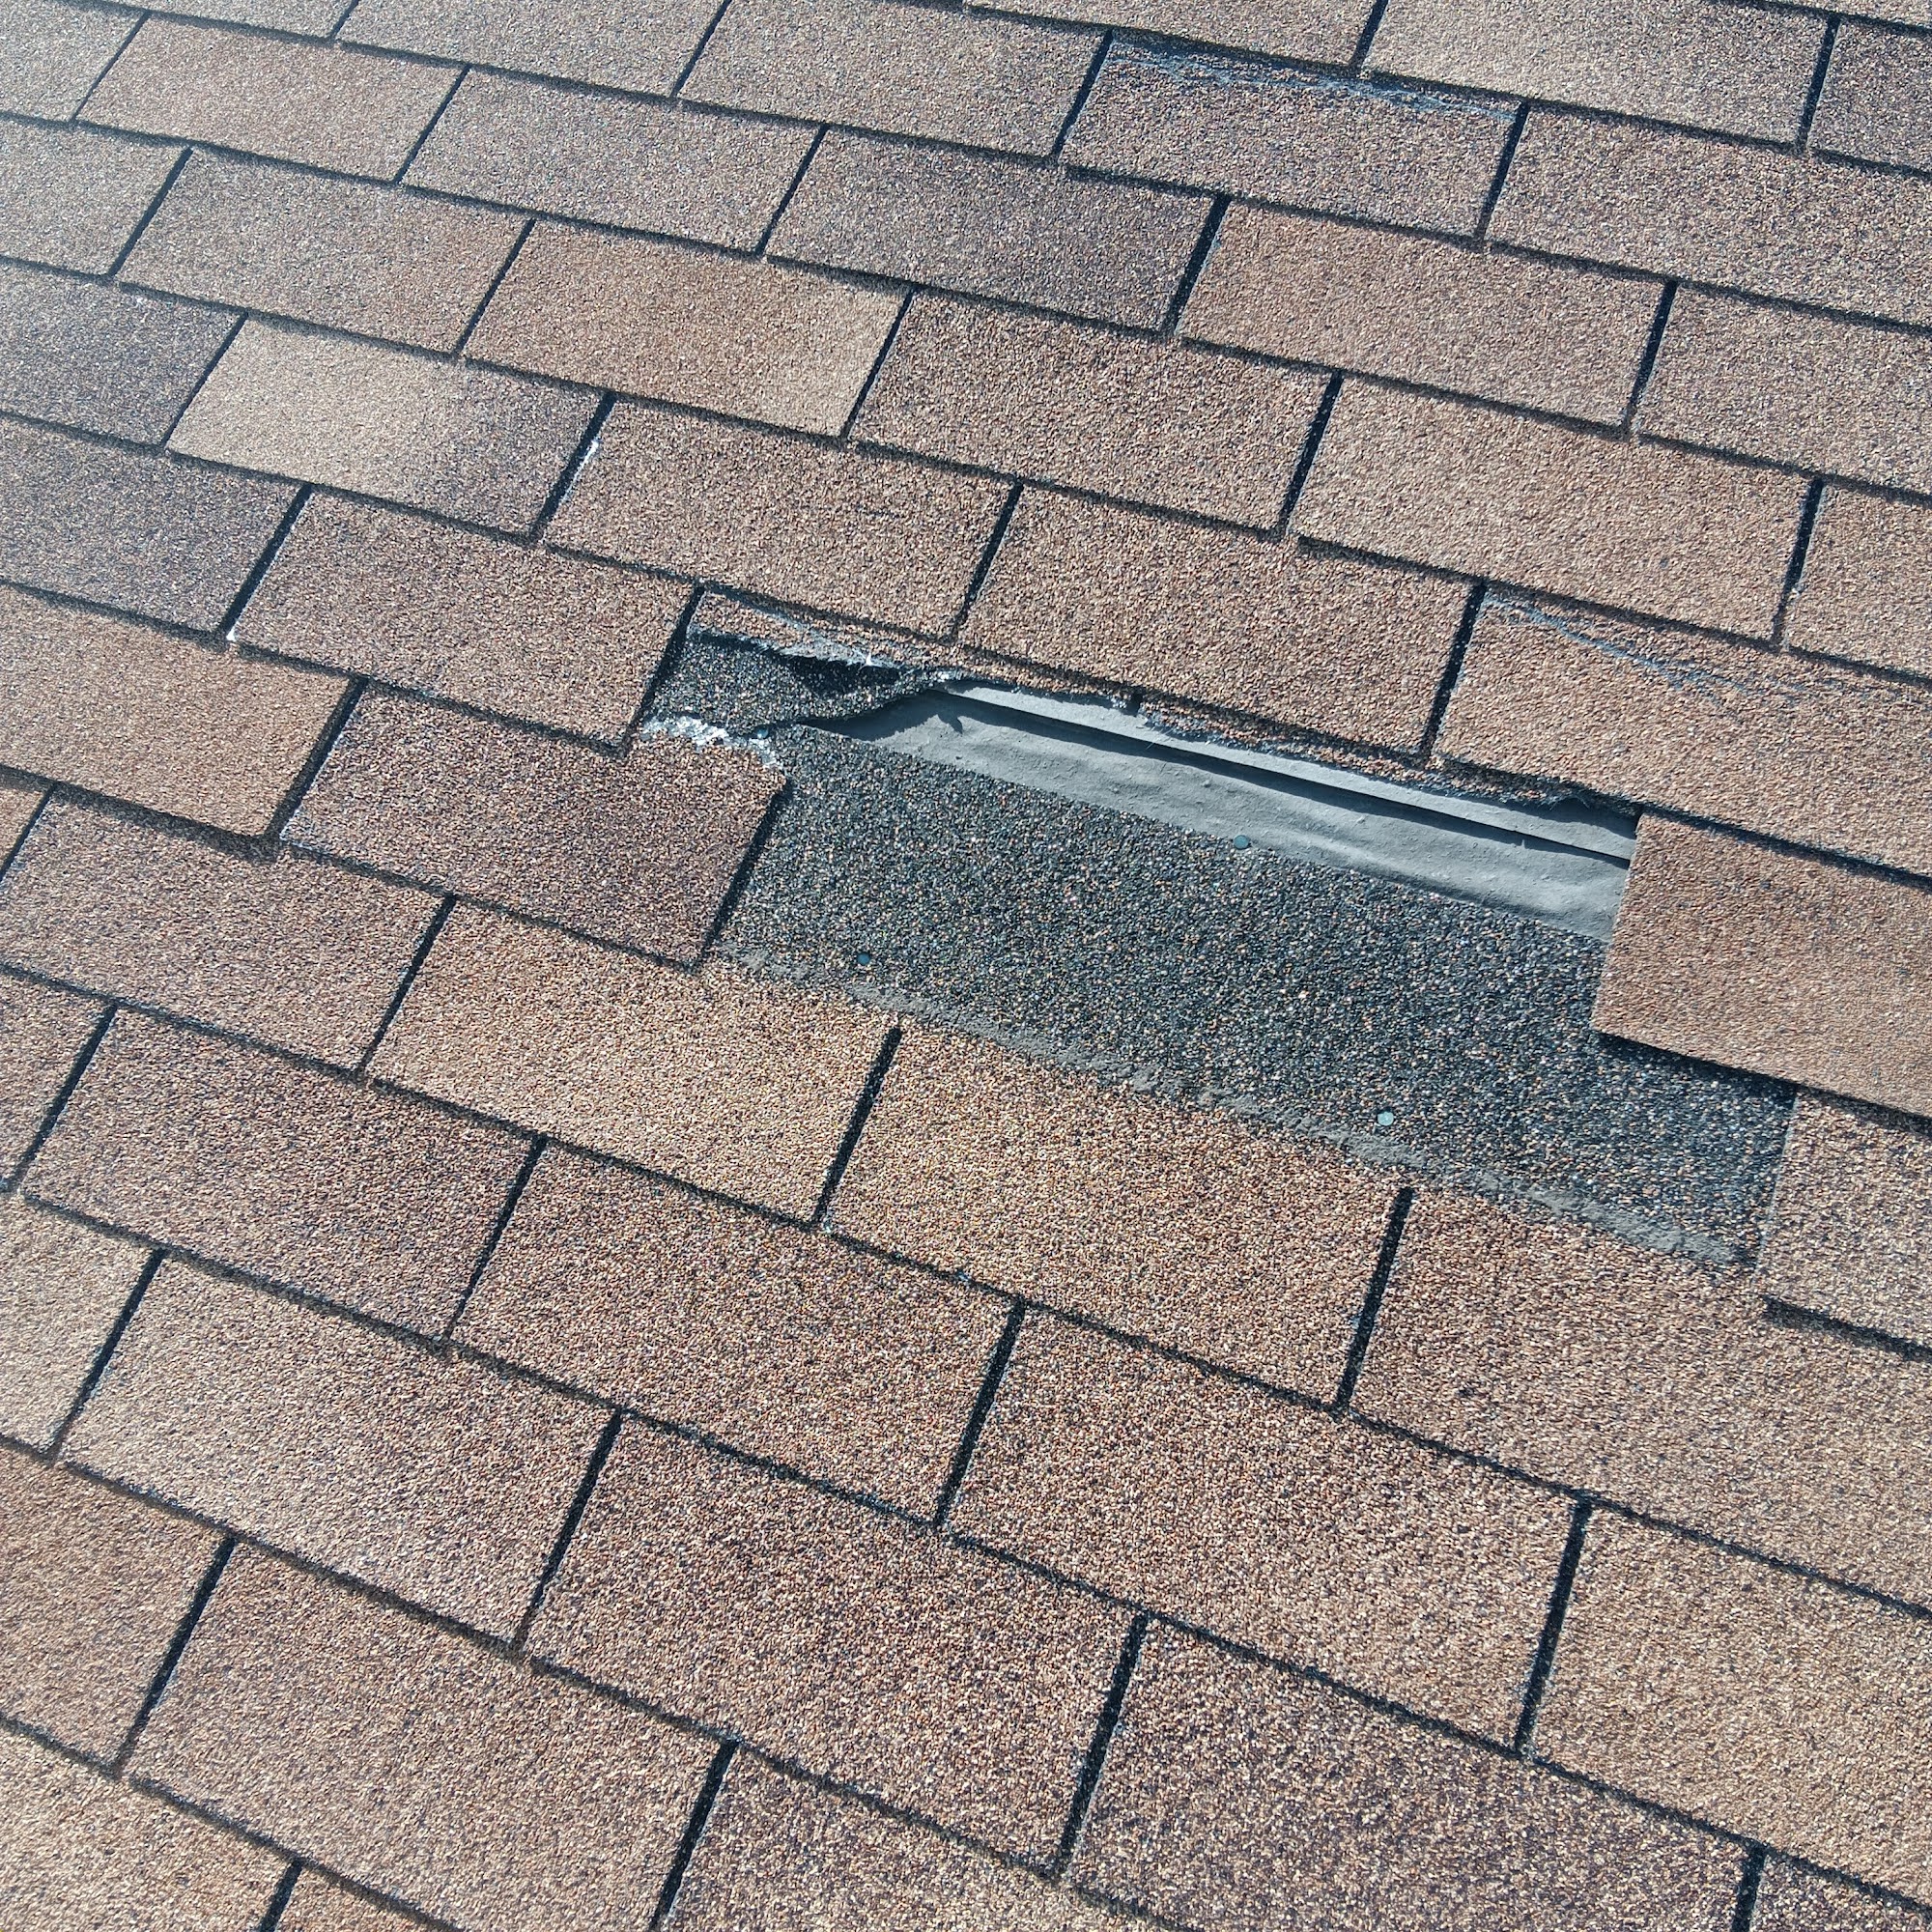 American Roofing & Waterproofing LLC